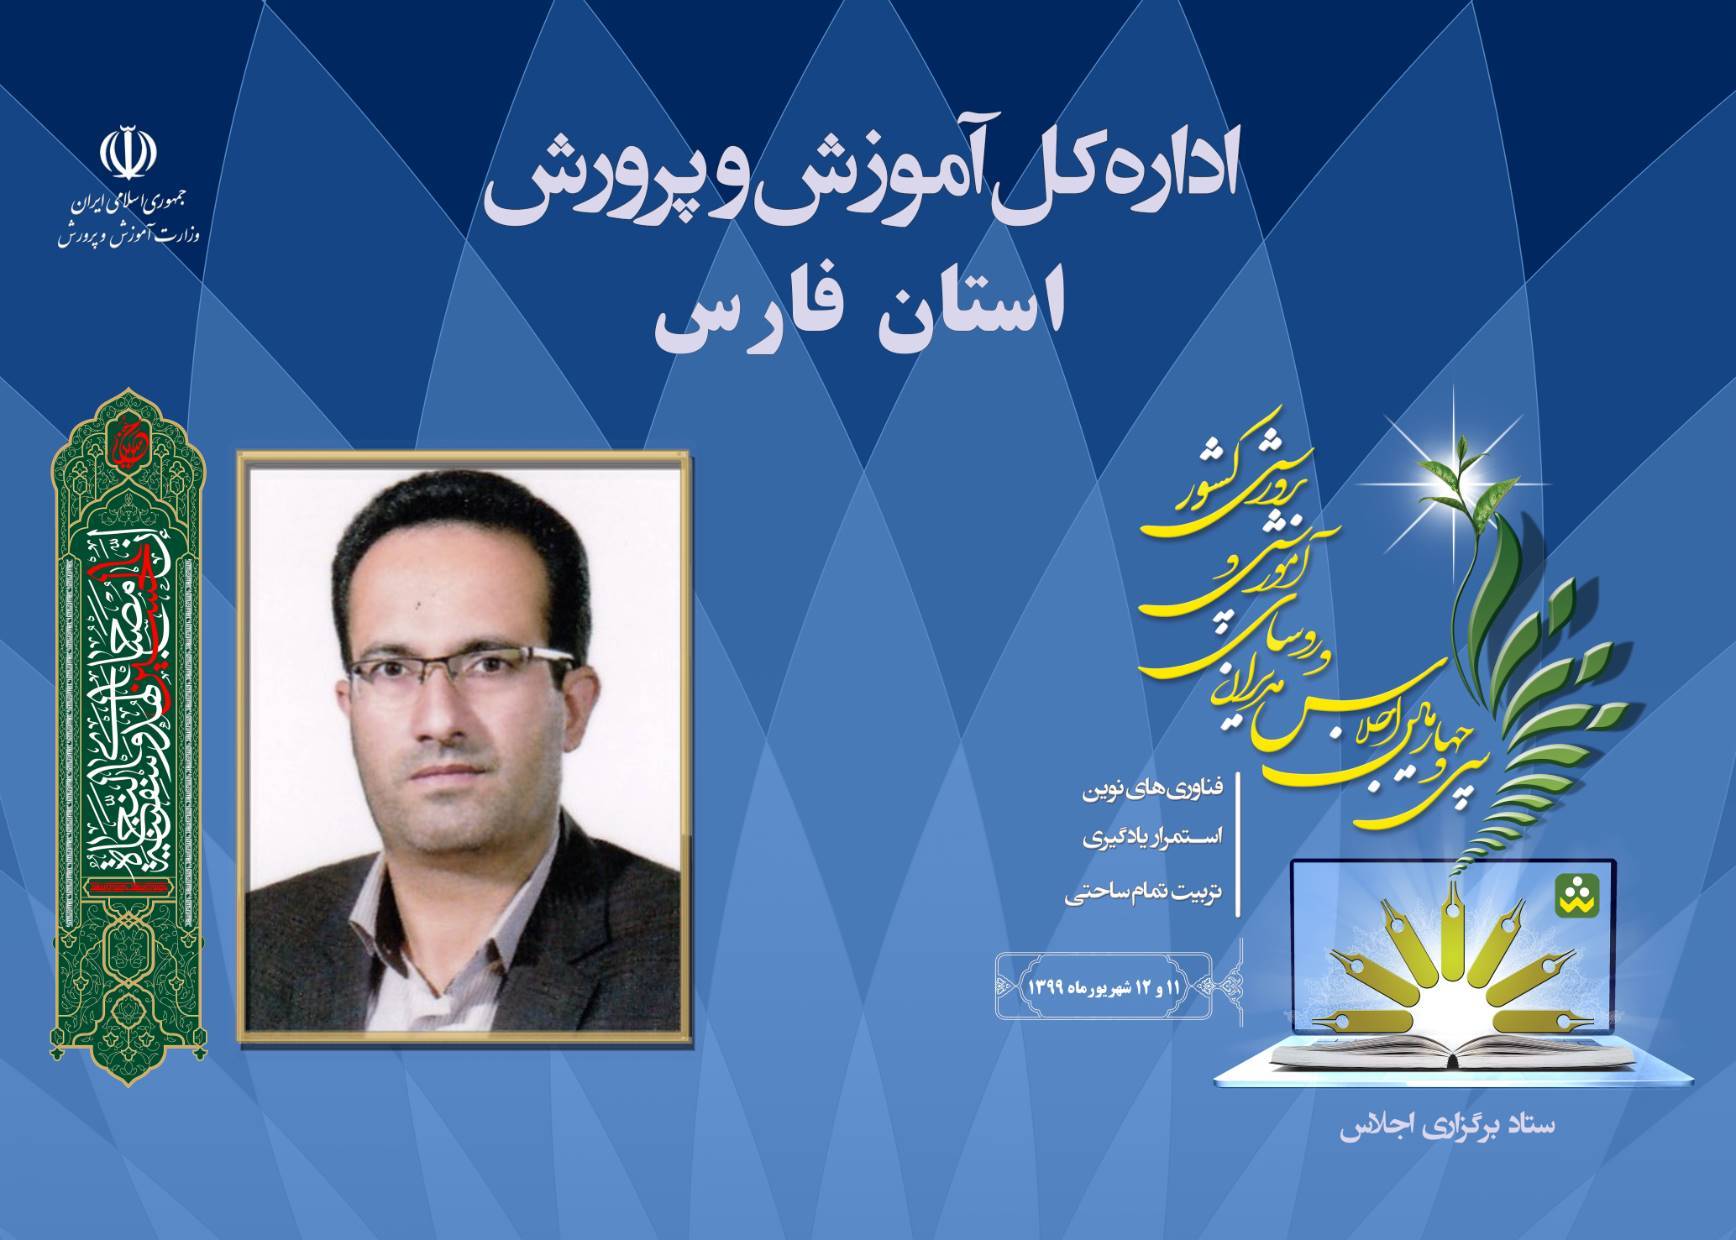 رئیس آموزش و پرورش اقلید استان فارس در حاشیه اجلاس سراسری روسای ادارات آموزش و پرورش کشور